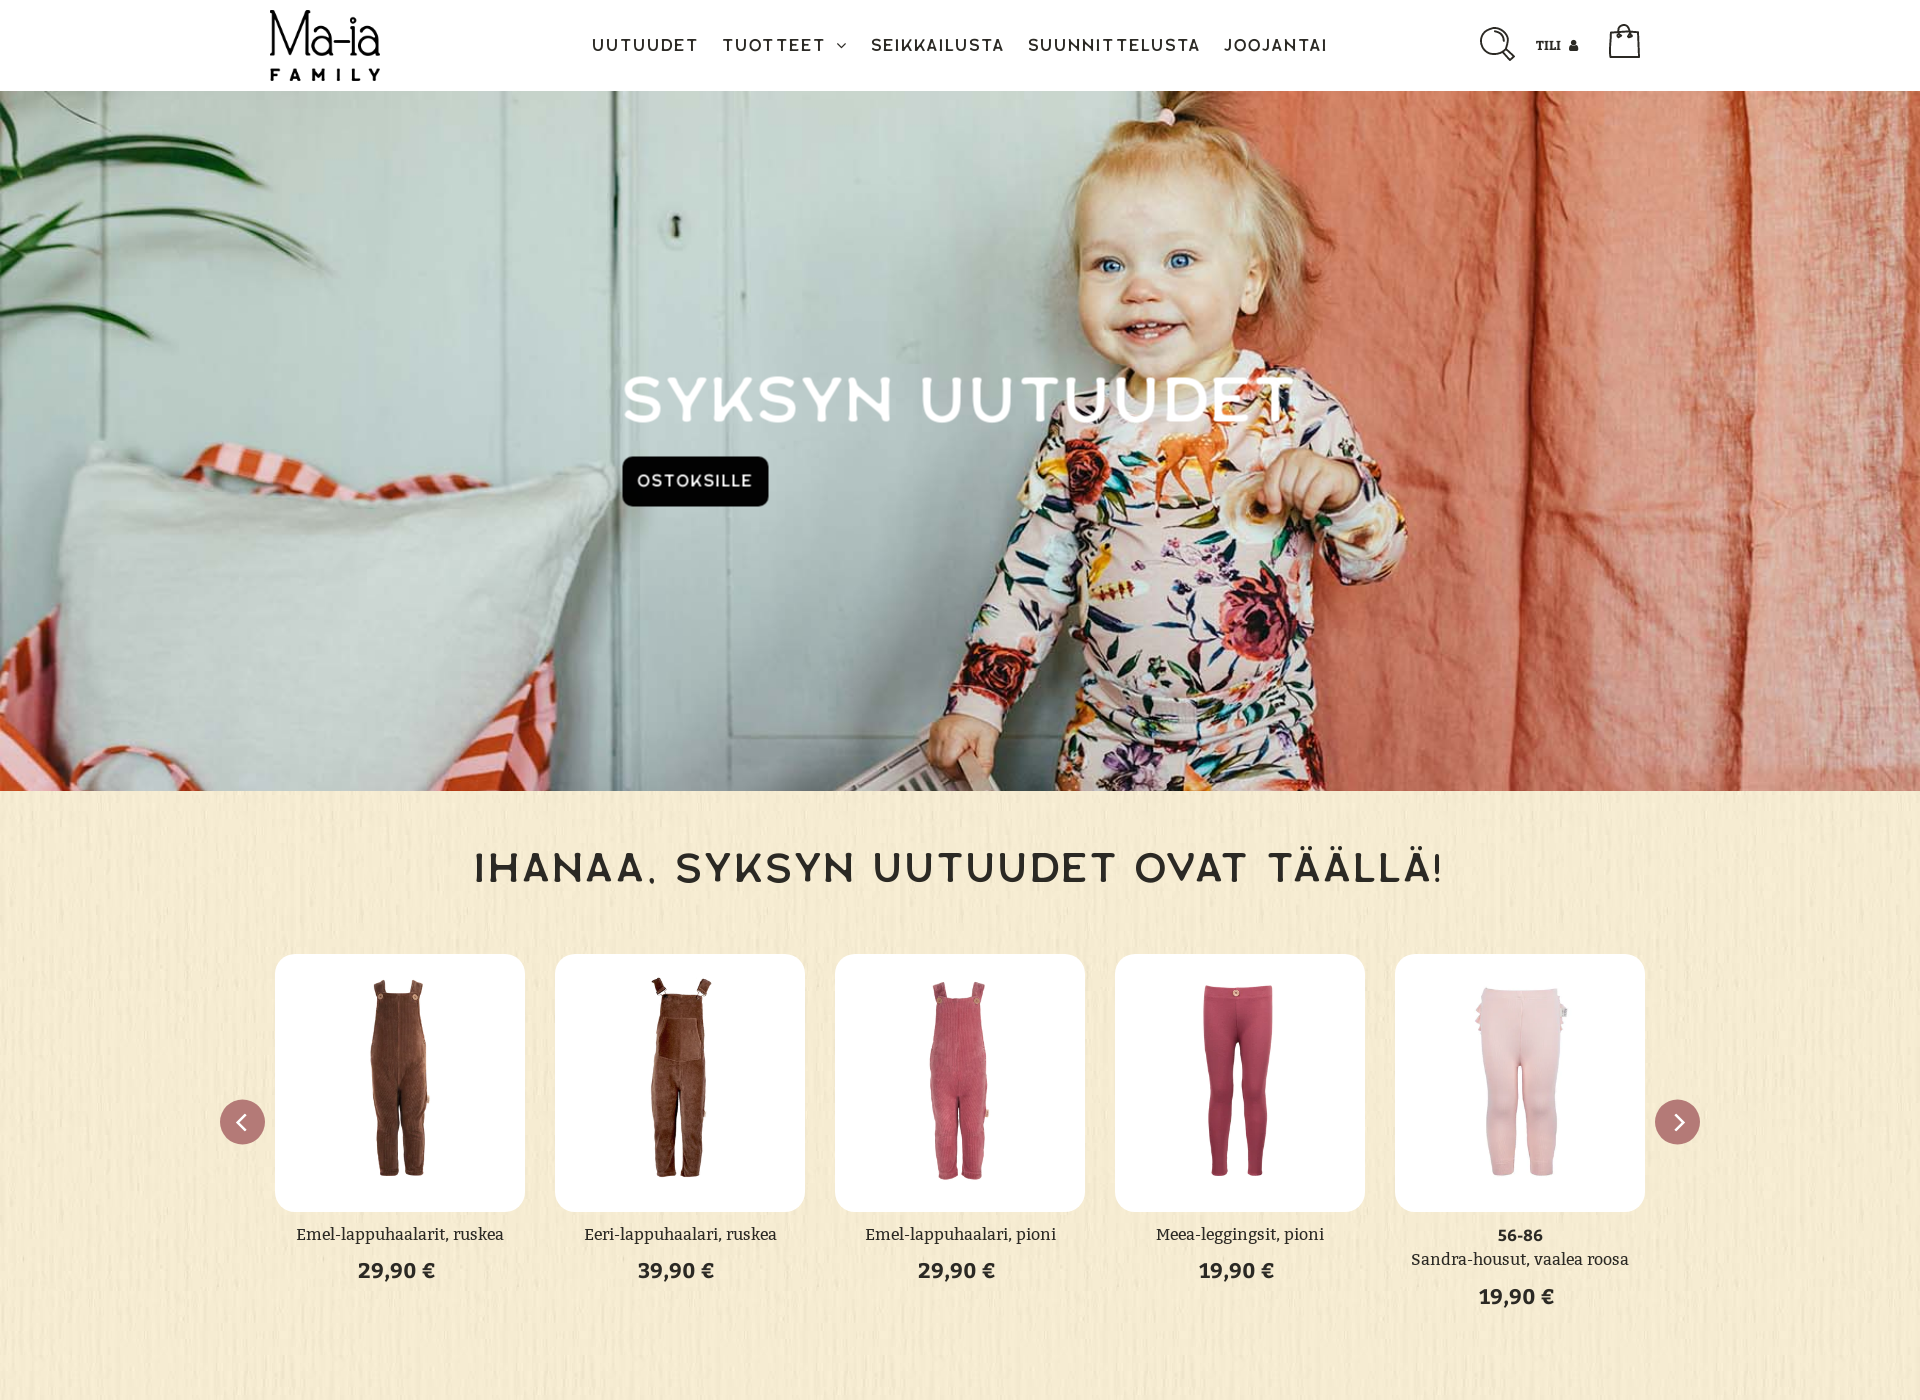 Skärmdump för maiafamily.fi